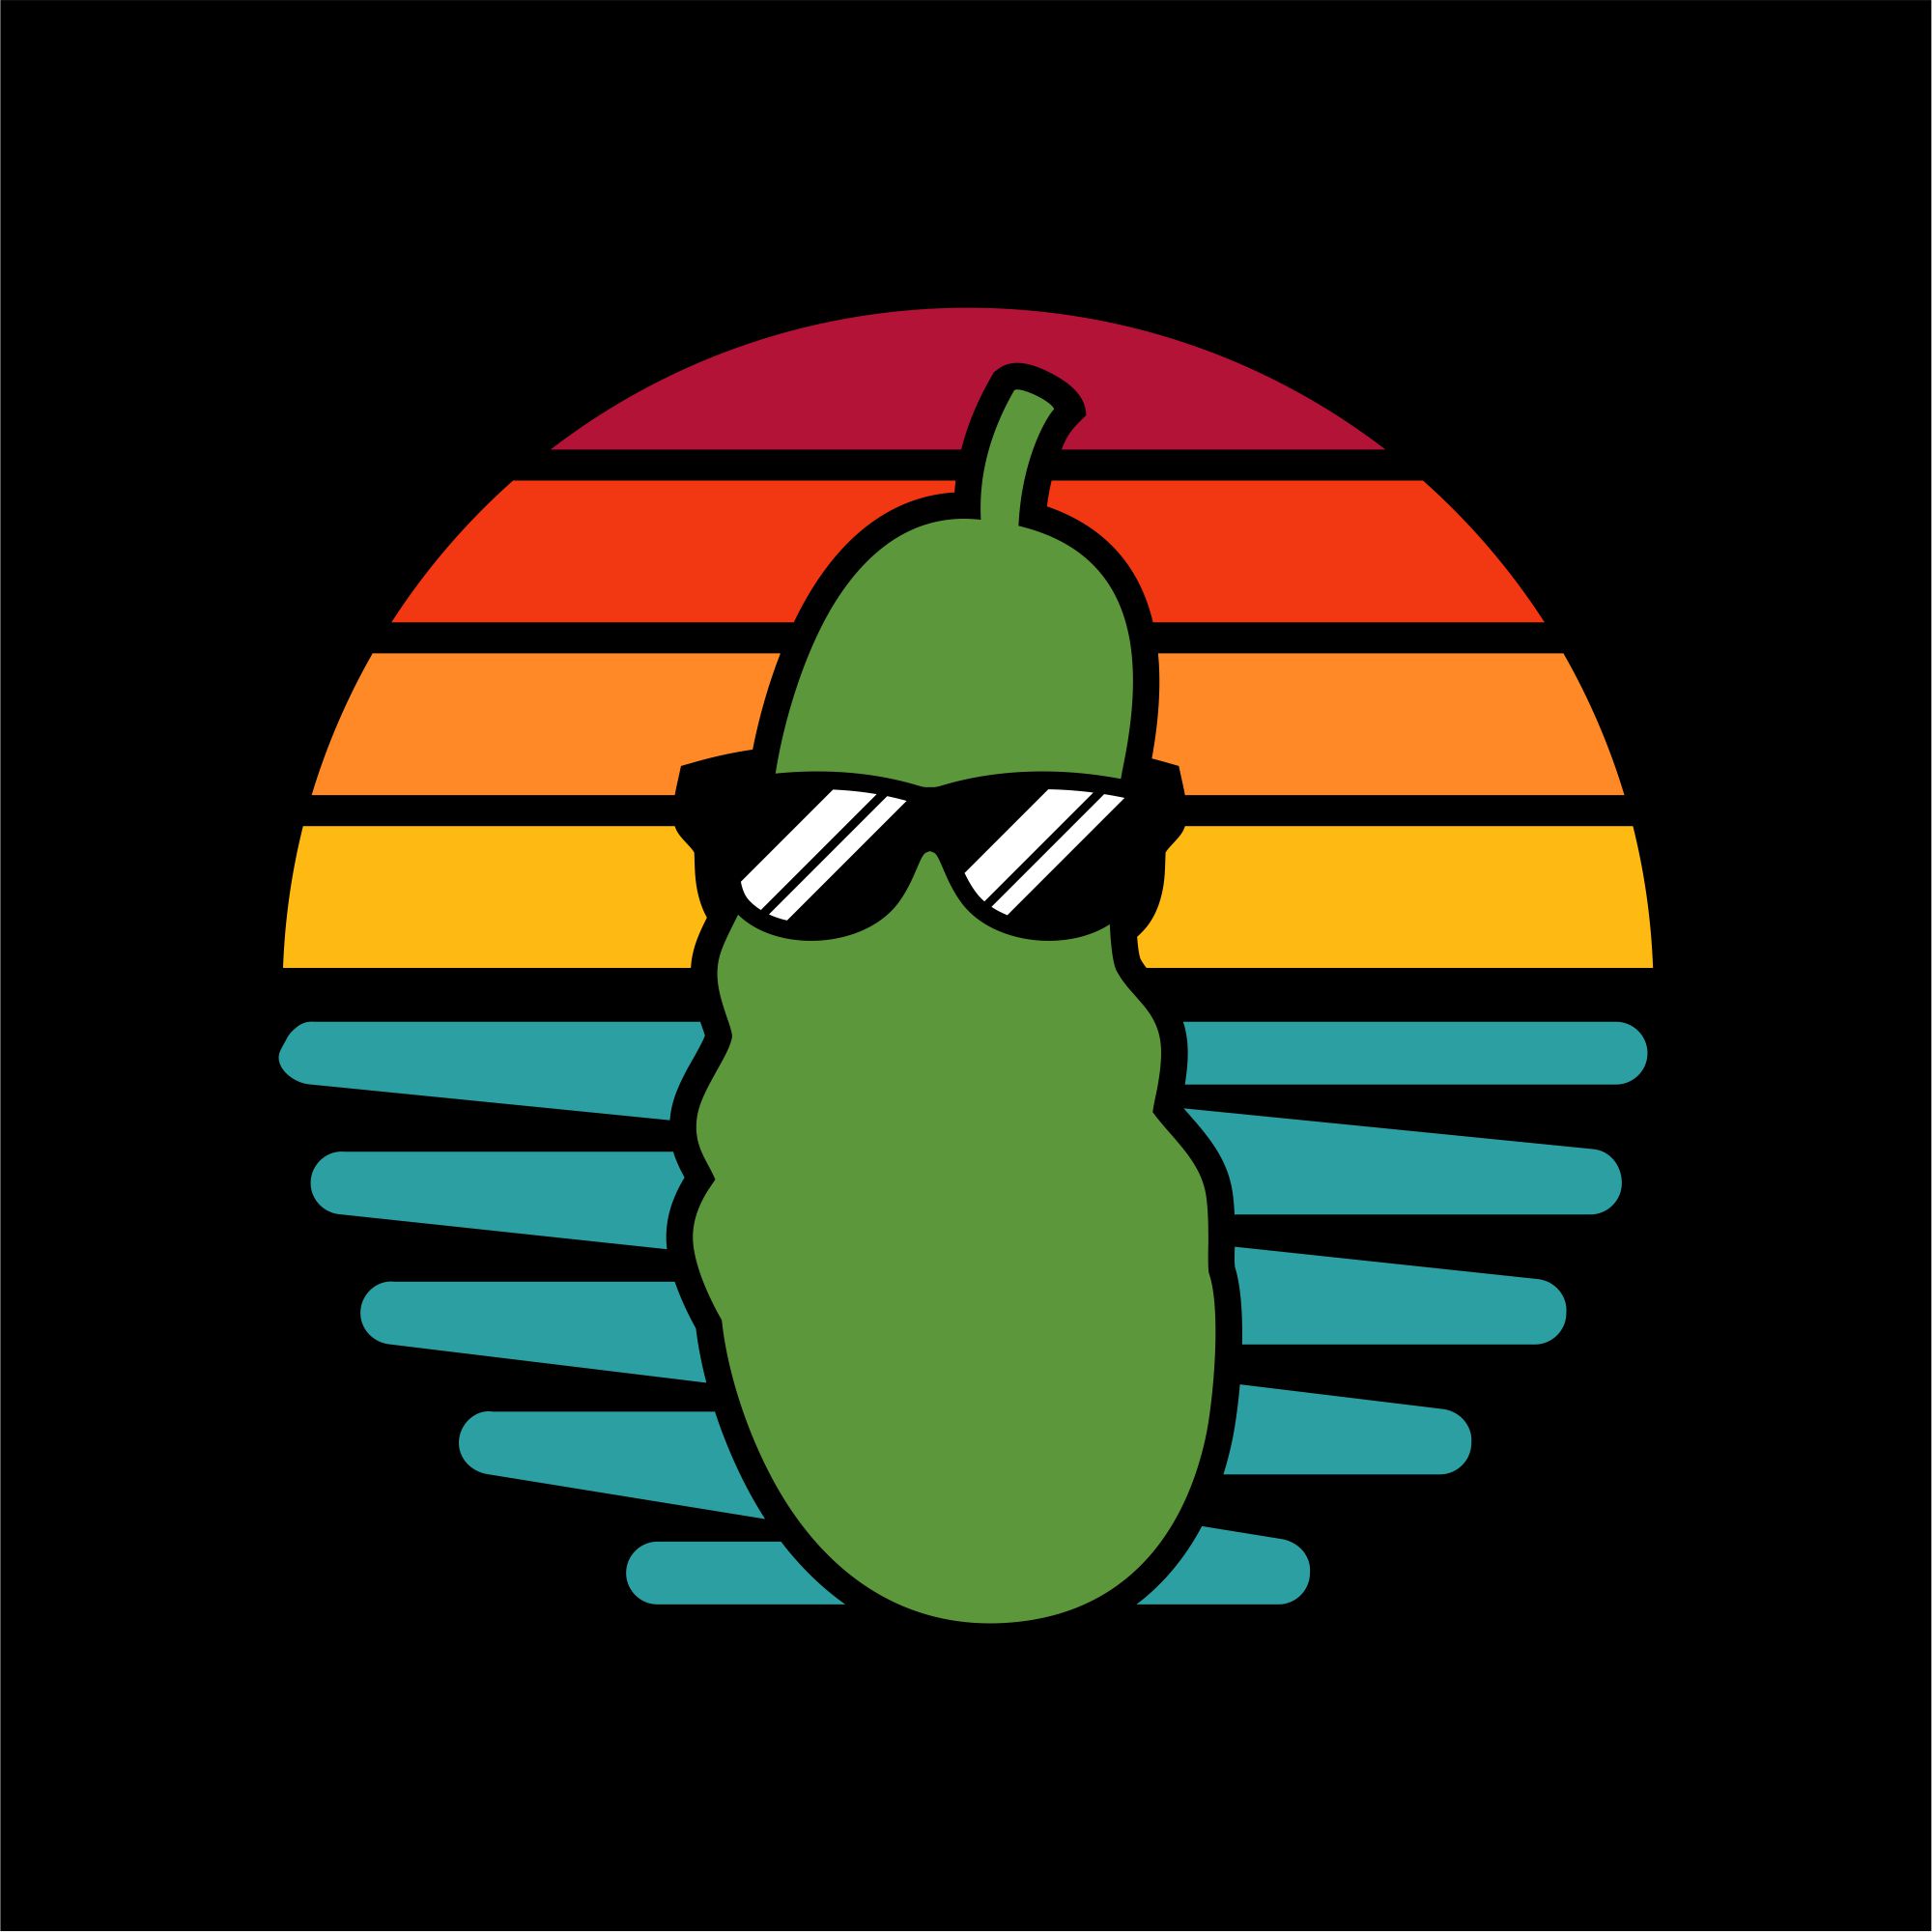 PickleBali's logo